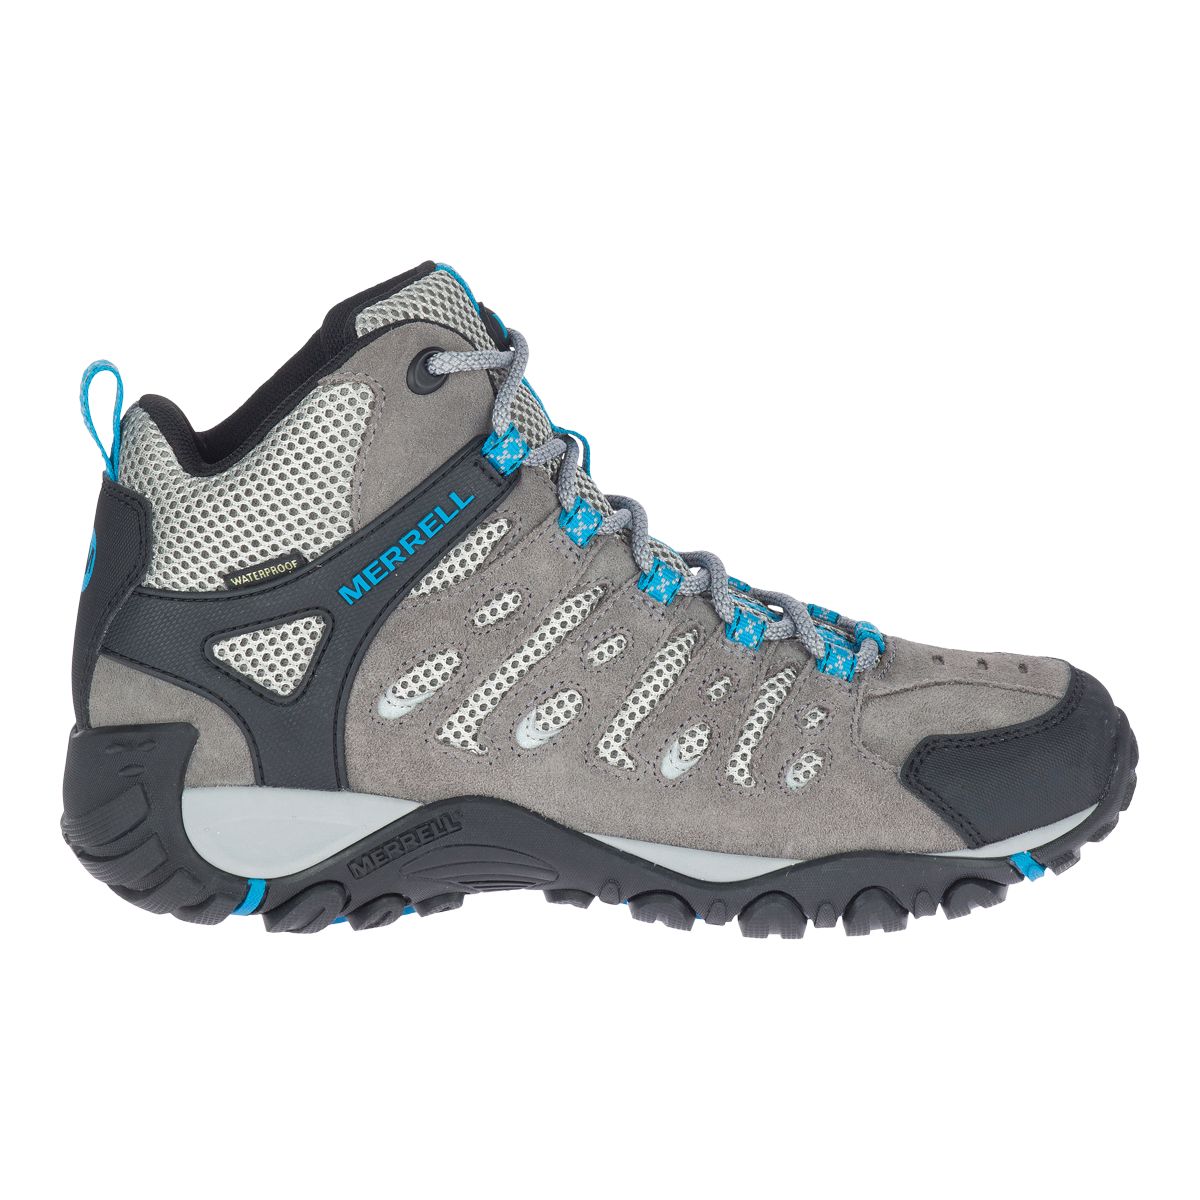 Merrell Women's Crosslander 2 Hiking Boots  Waterproof